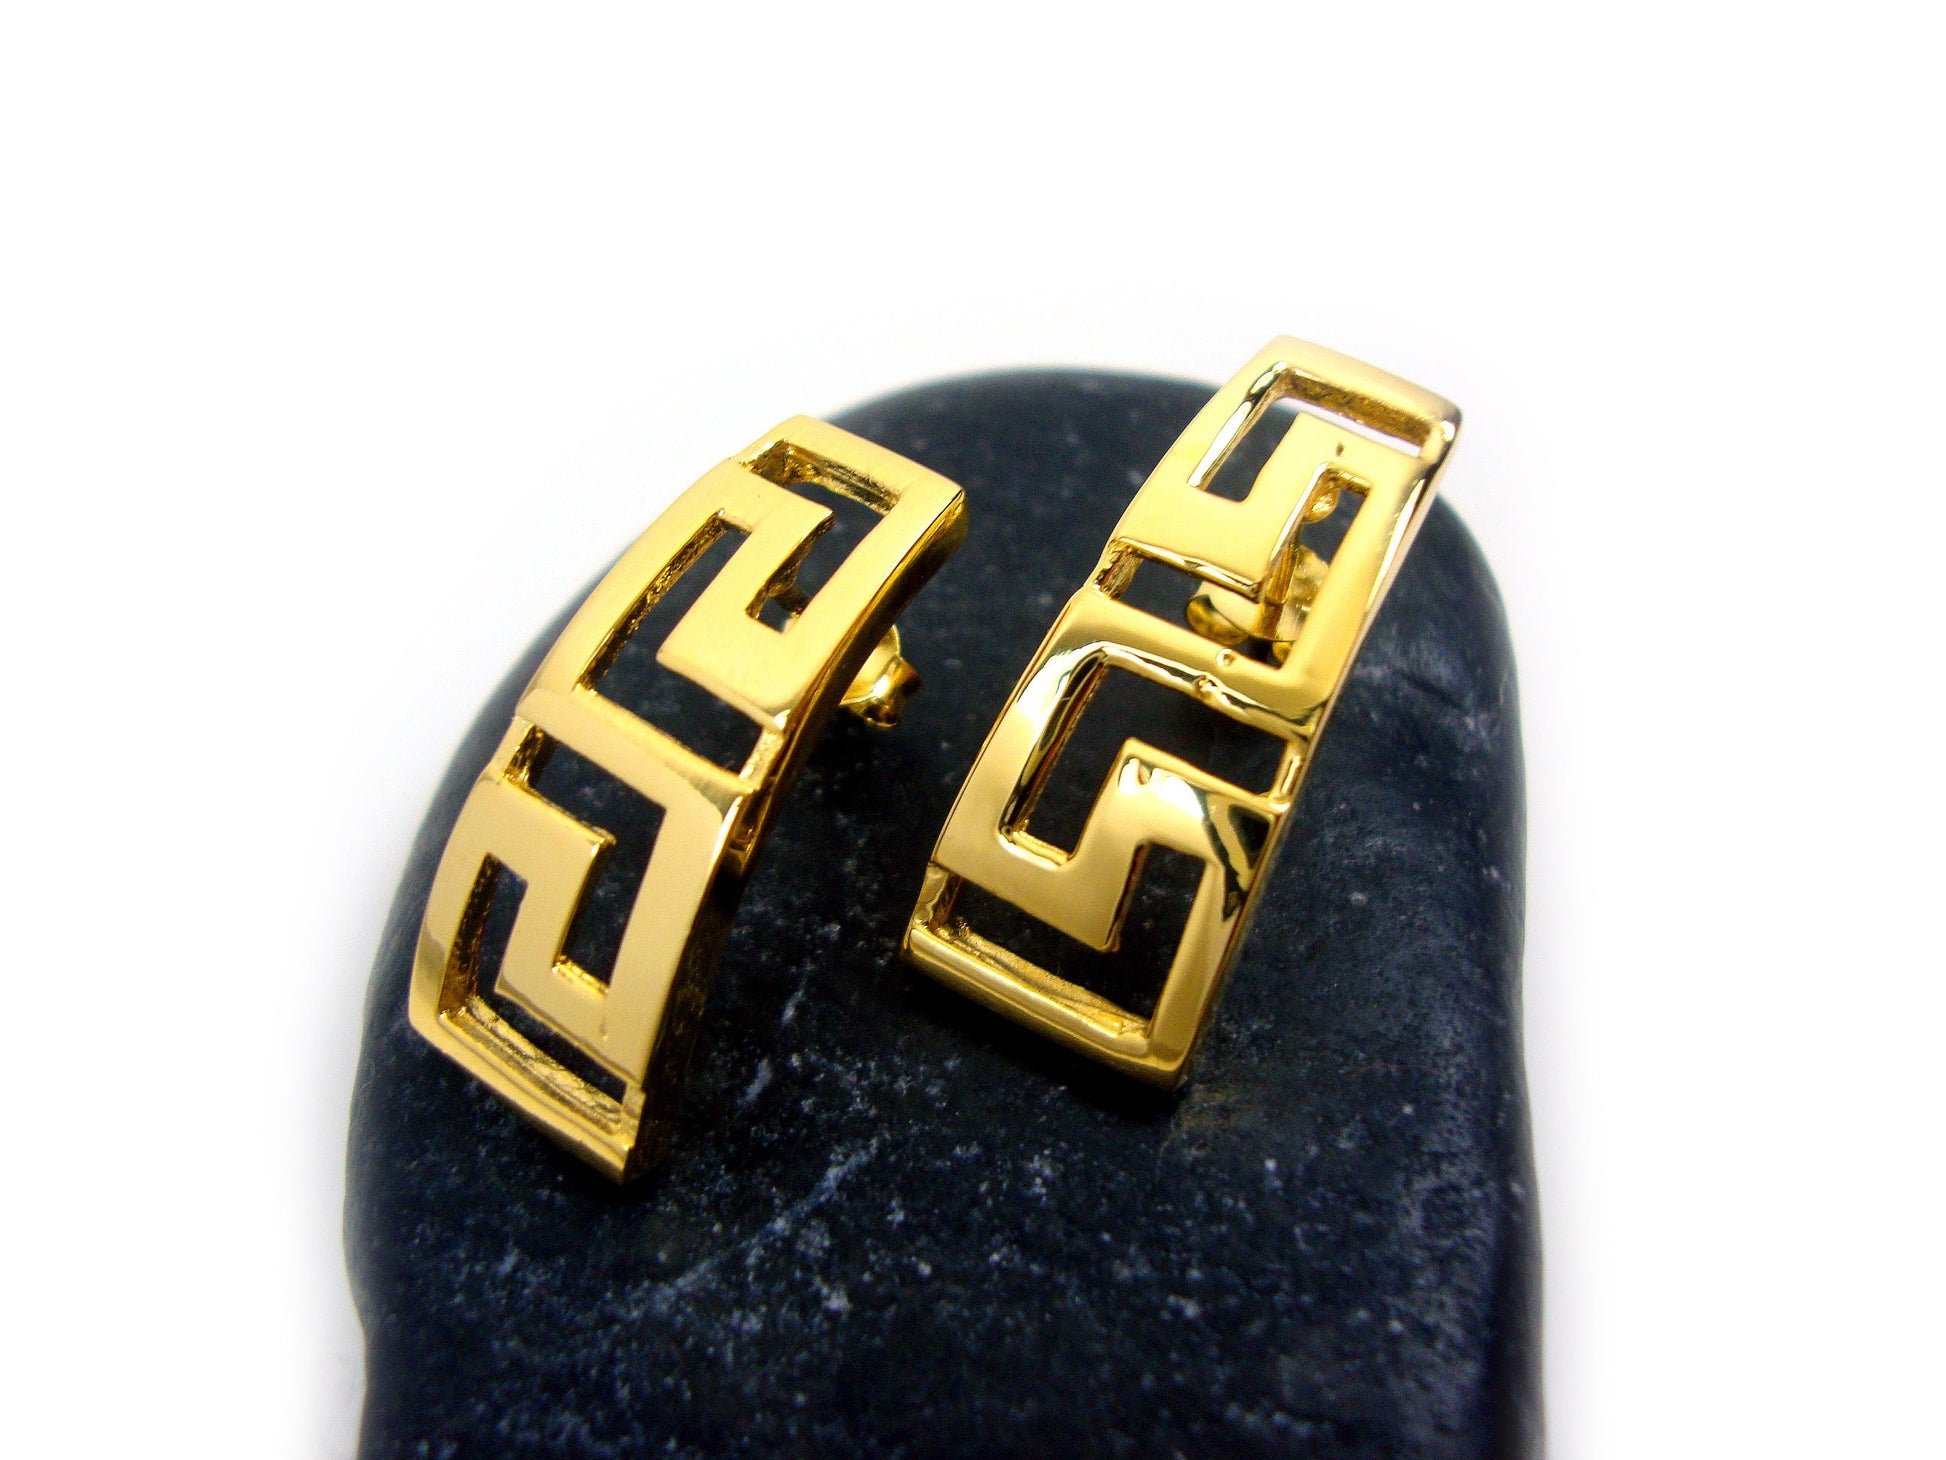 Greek key gold plated earrings on a black rock.